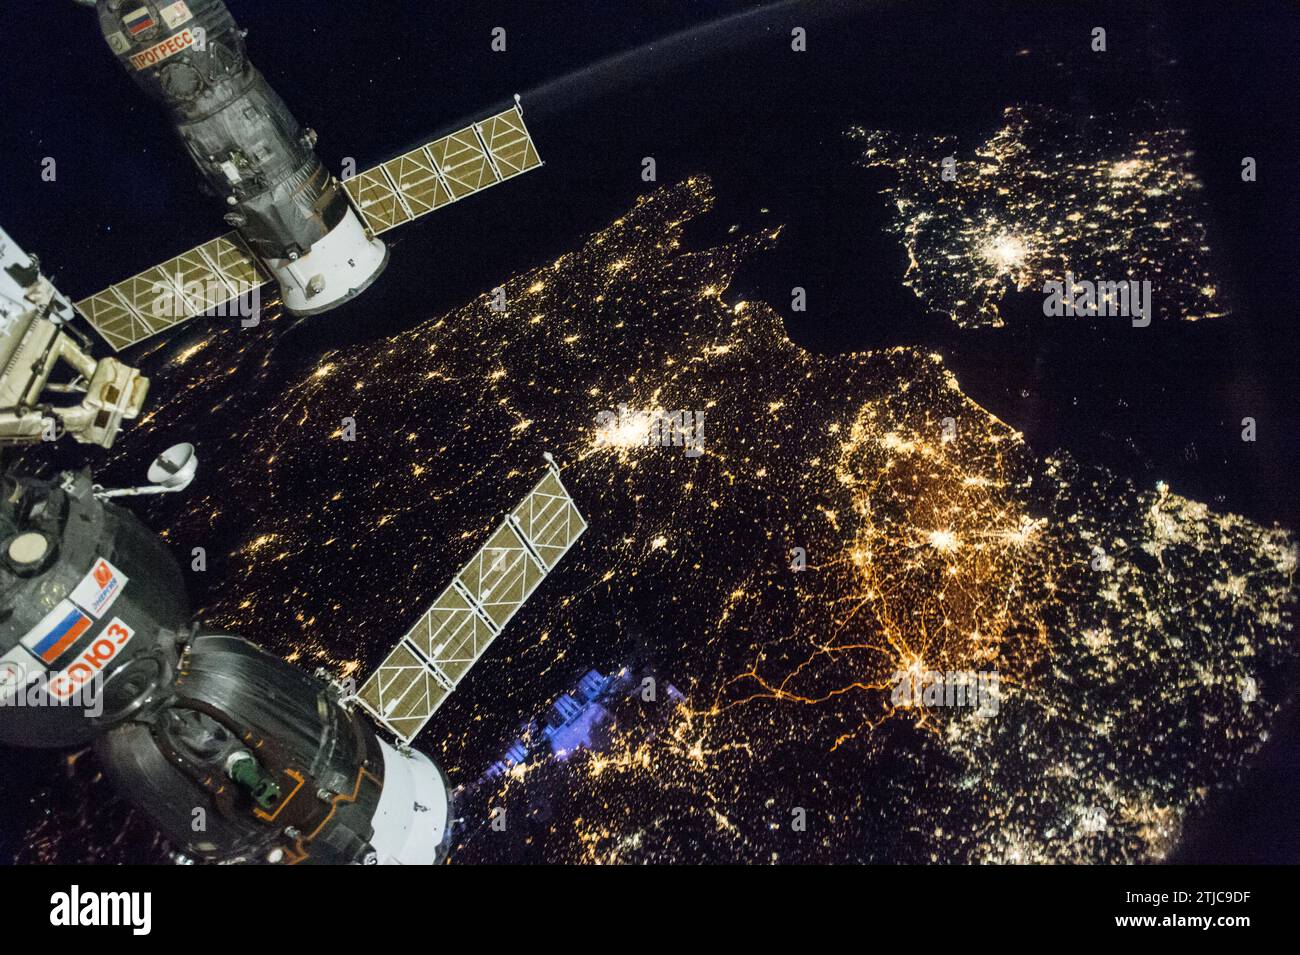 L'equipaggio della stazione spaziale Internazionale (ISS) cattura una vista dell'Europa di notte. 28 novembre 2016. Le luminose luci della città di Parigi possono essere viste insieme alle aree del Belgio, dei Paesi Bassi e dell'Inghilterra (in alto a sinistra). Una versione ottimizzata di un'immagine originale della NASA / credito: NASA Foto Stock